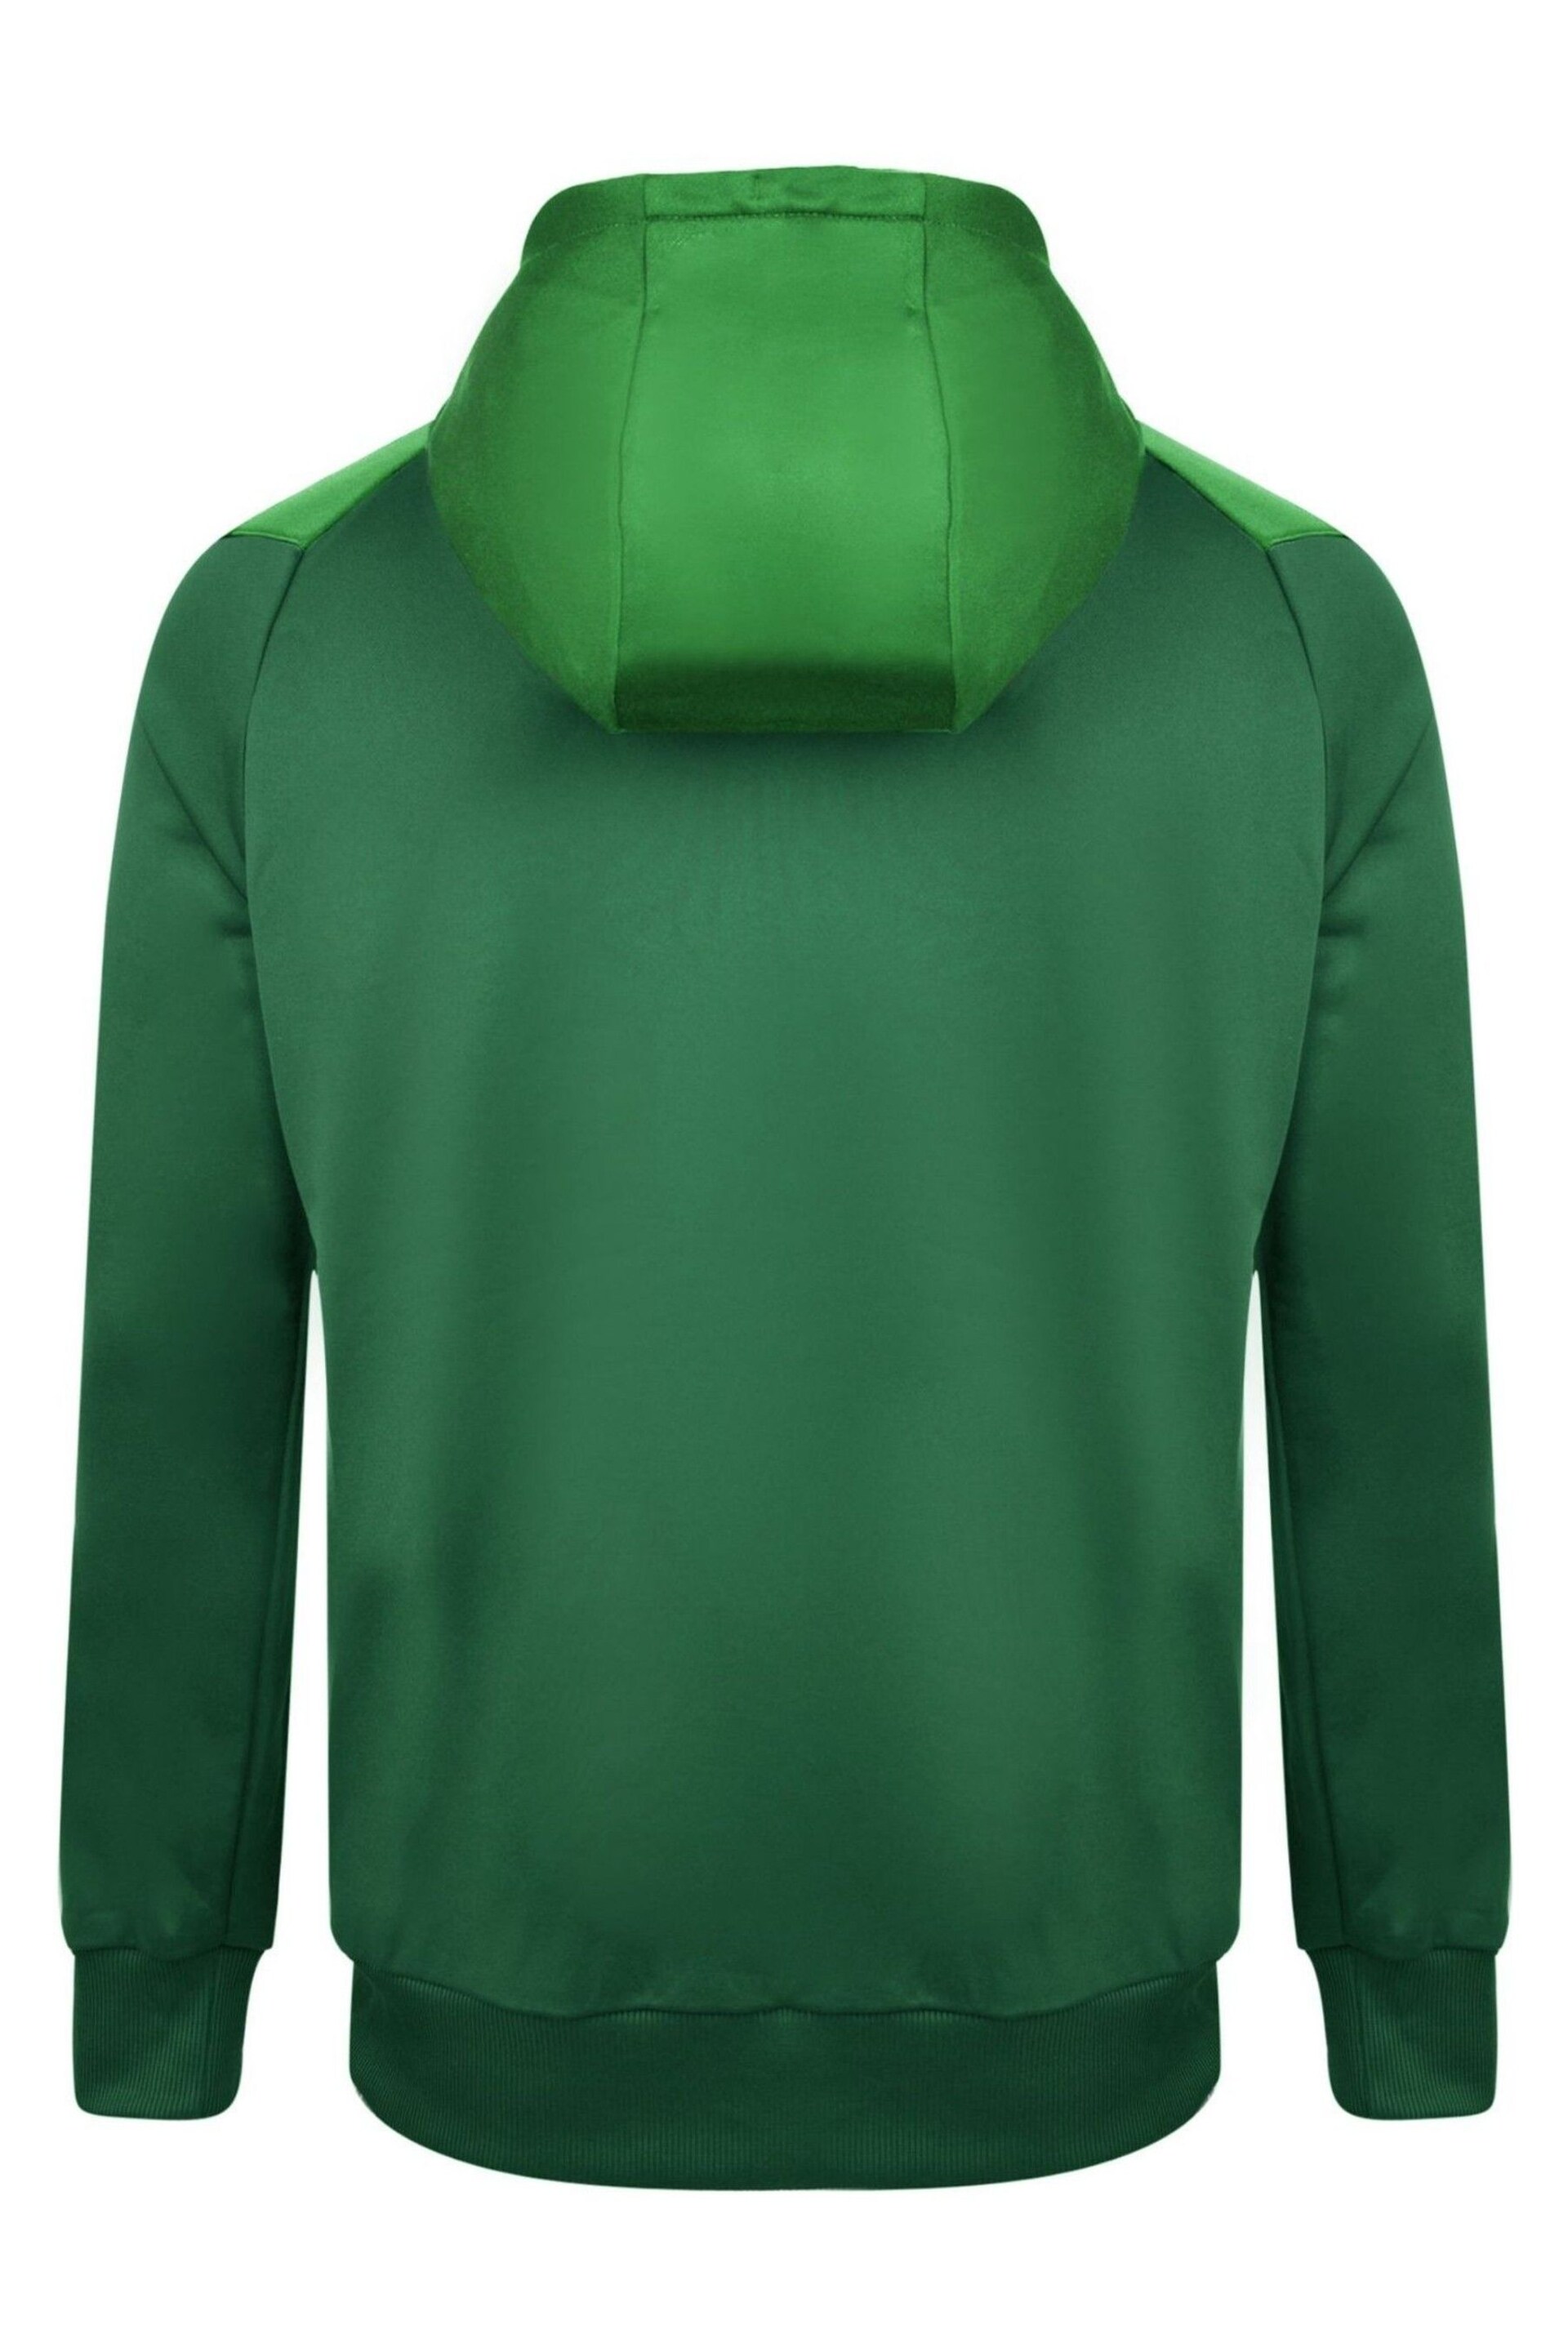 Umbro Green Junior Zip Thru Hoodie - Image 2 of 2